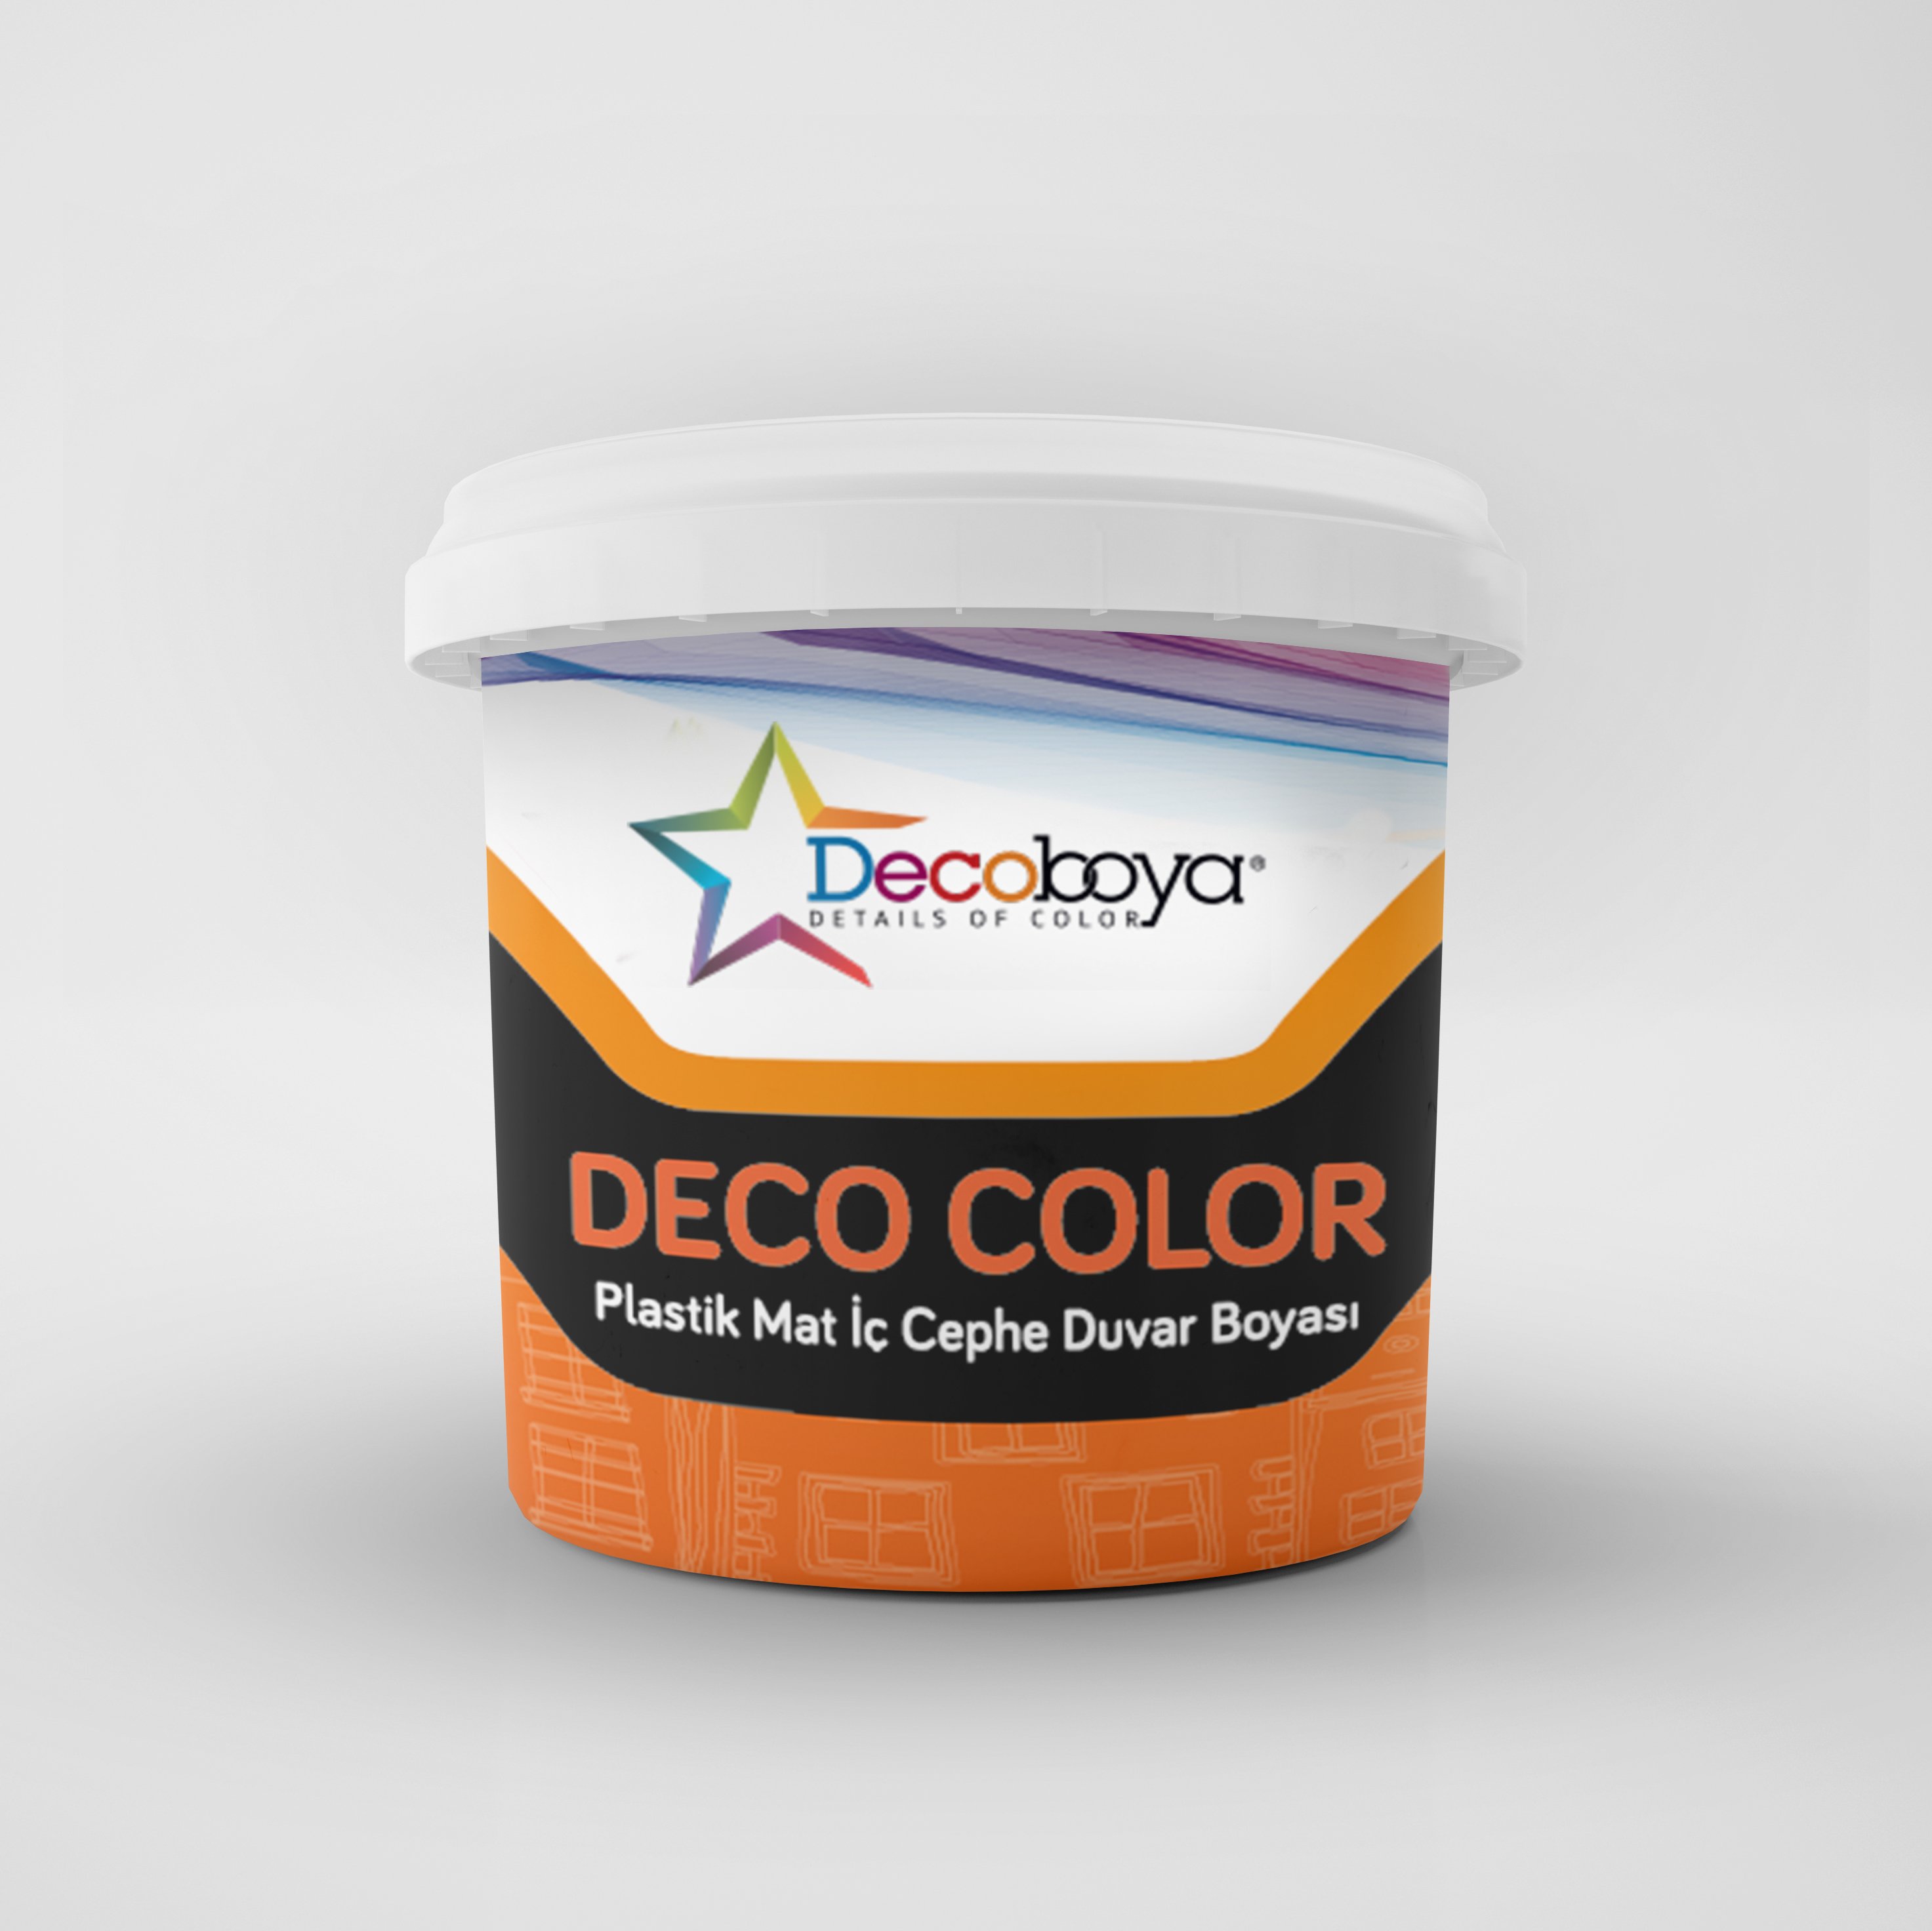 Deco Color Plastik Mat İç Cephe Duvar Boyası 3 Kg Beyaz main variant image